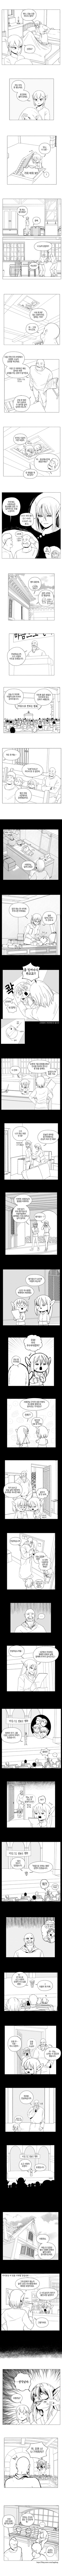 오크의 포로가 된 여사령관 만화 56화.manhwa